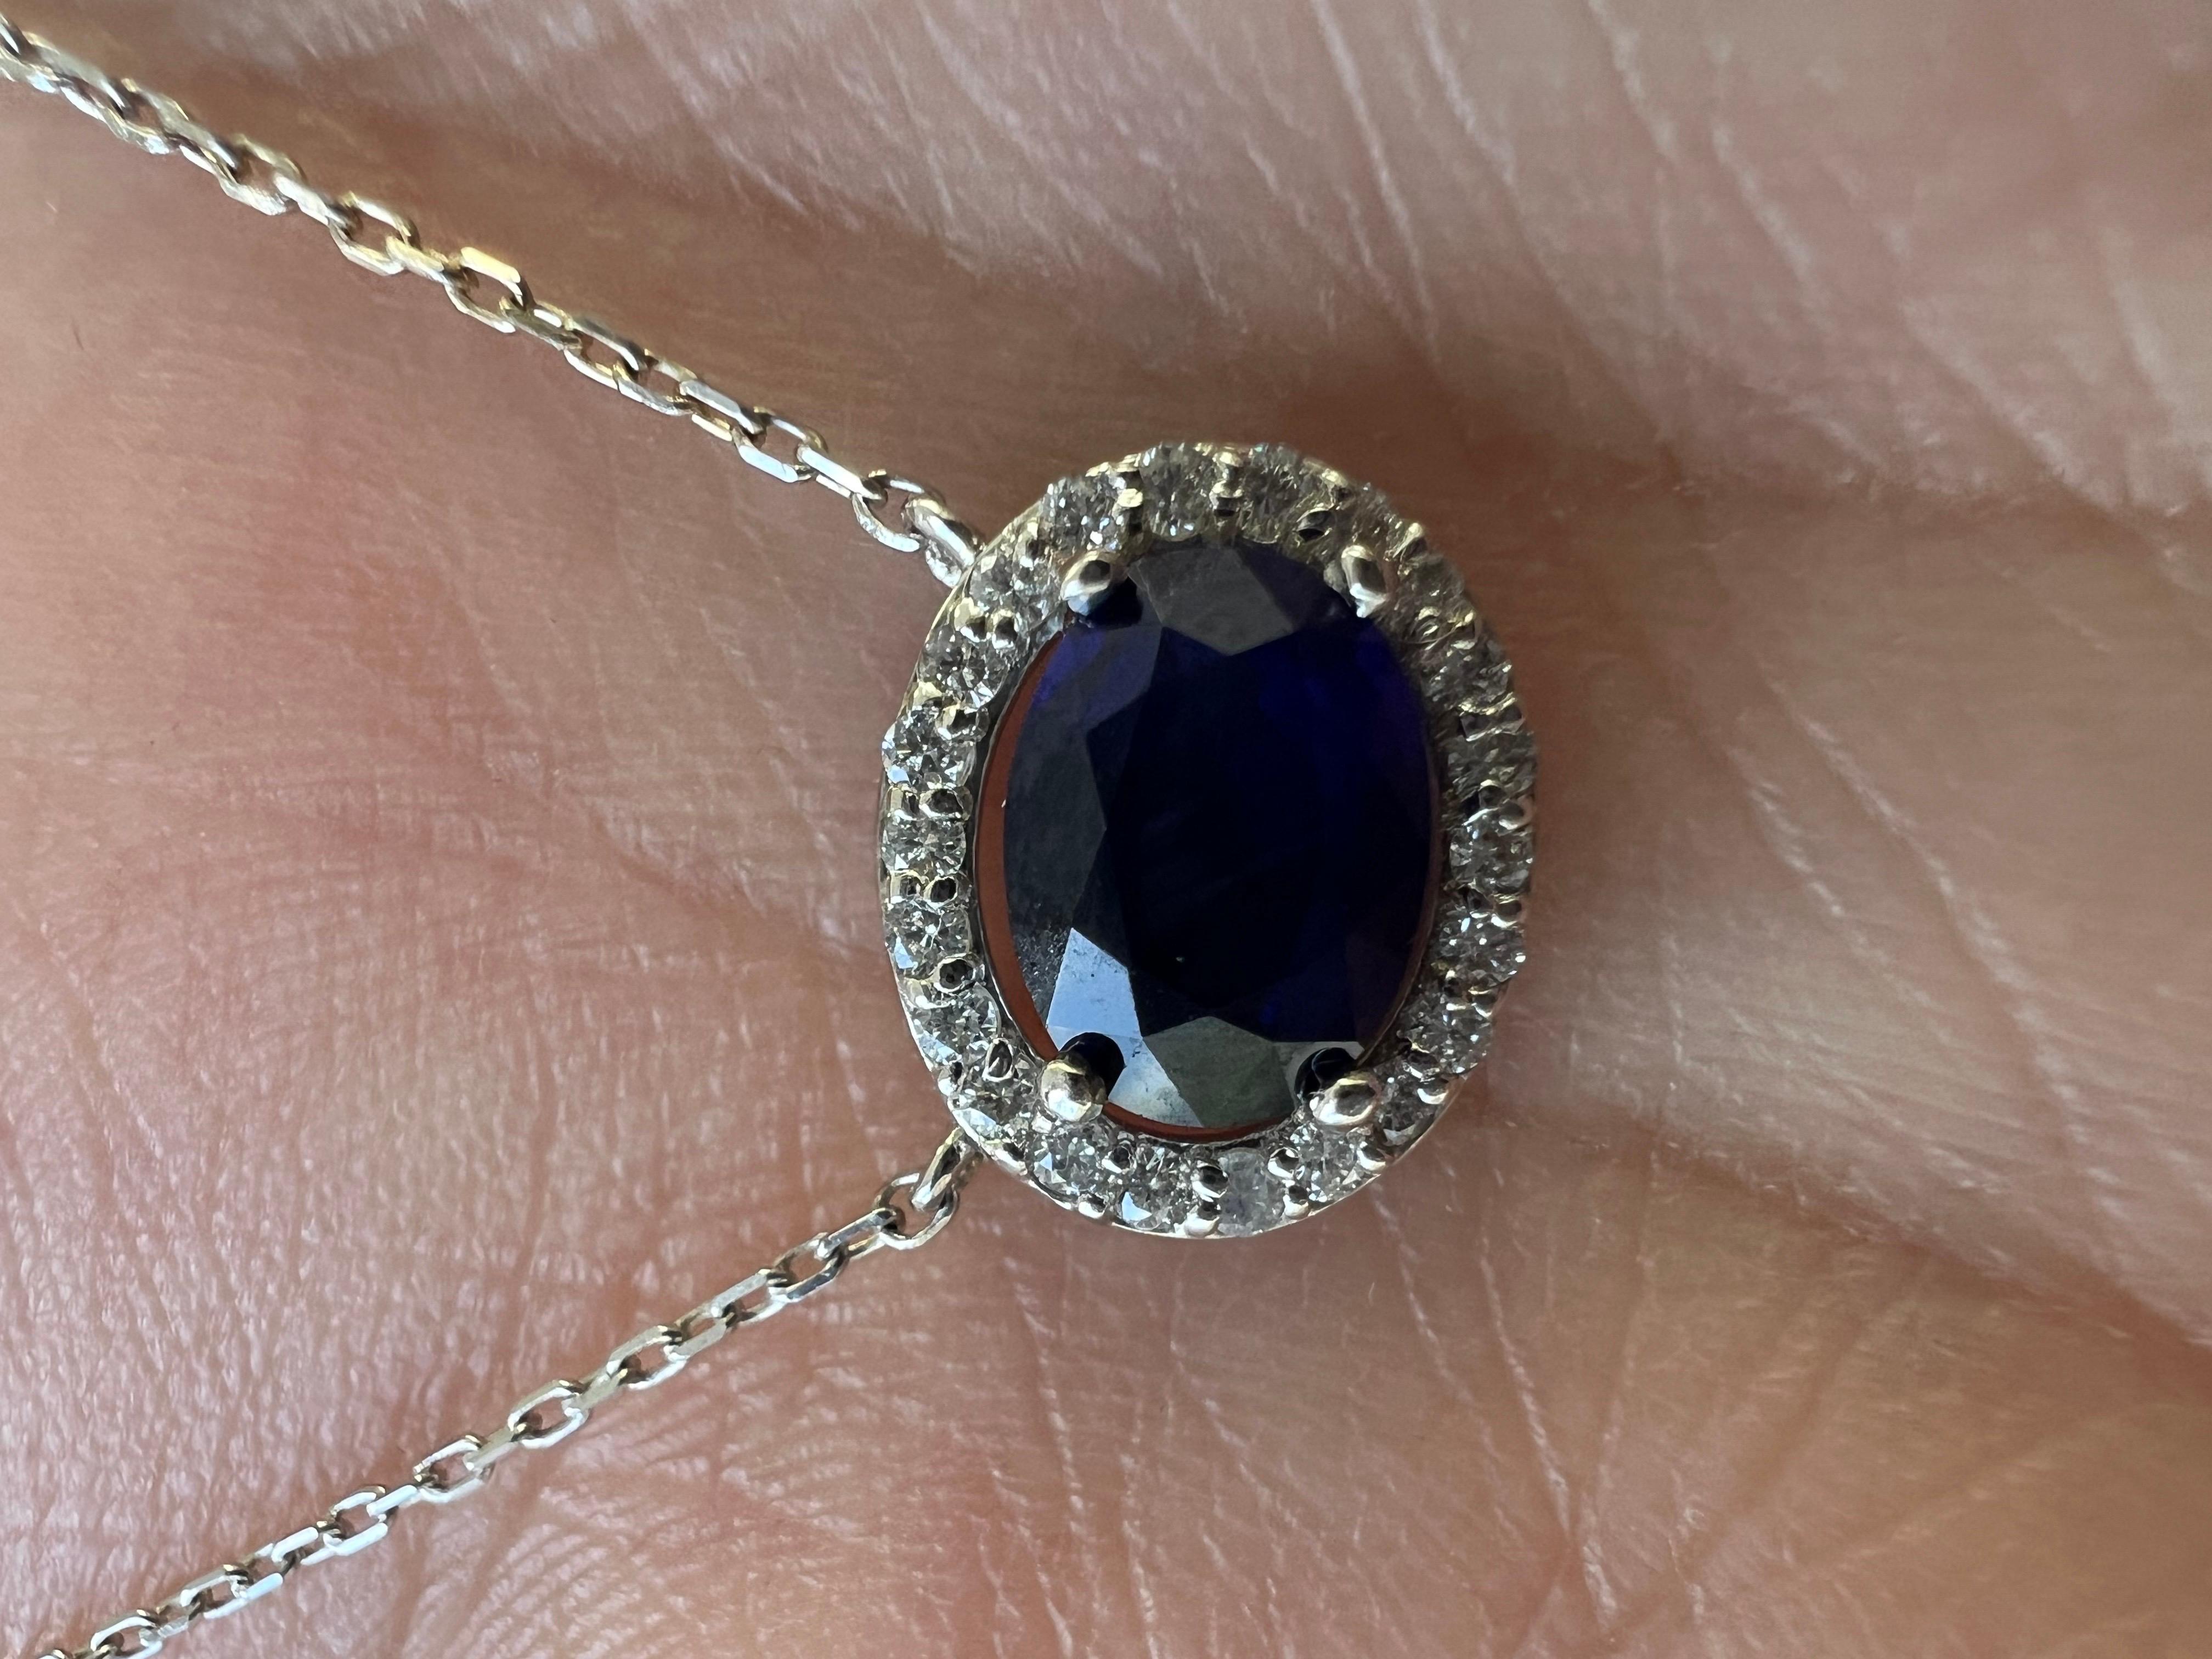 Natürlicher blauer Saphir-Diamant-Anhänger 
1,97 Karat natürlicher blauer Saphir in einem Diamantanhänger aus 14k Weißgold mit natürlichen Diamanten im Vollschliff. Ost/West Einstellung. Perfekt für jede Gelegenheit.